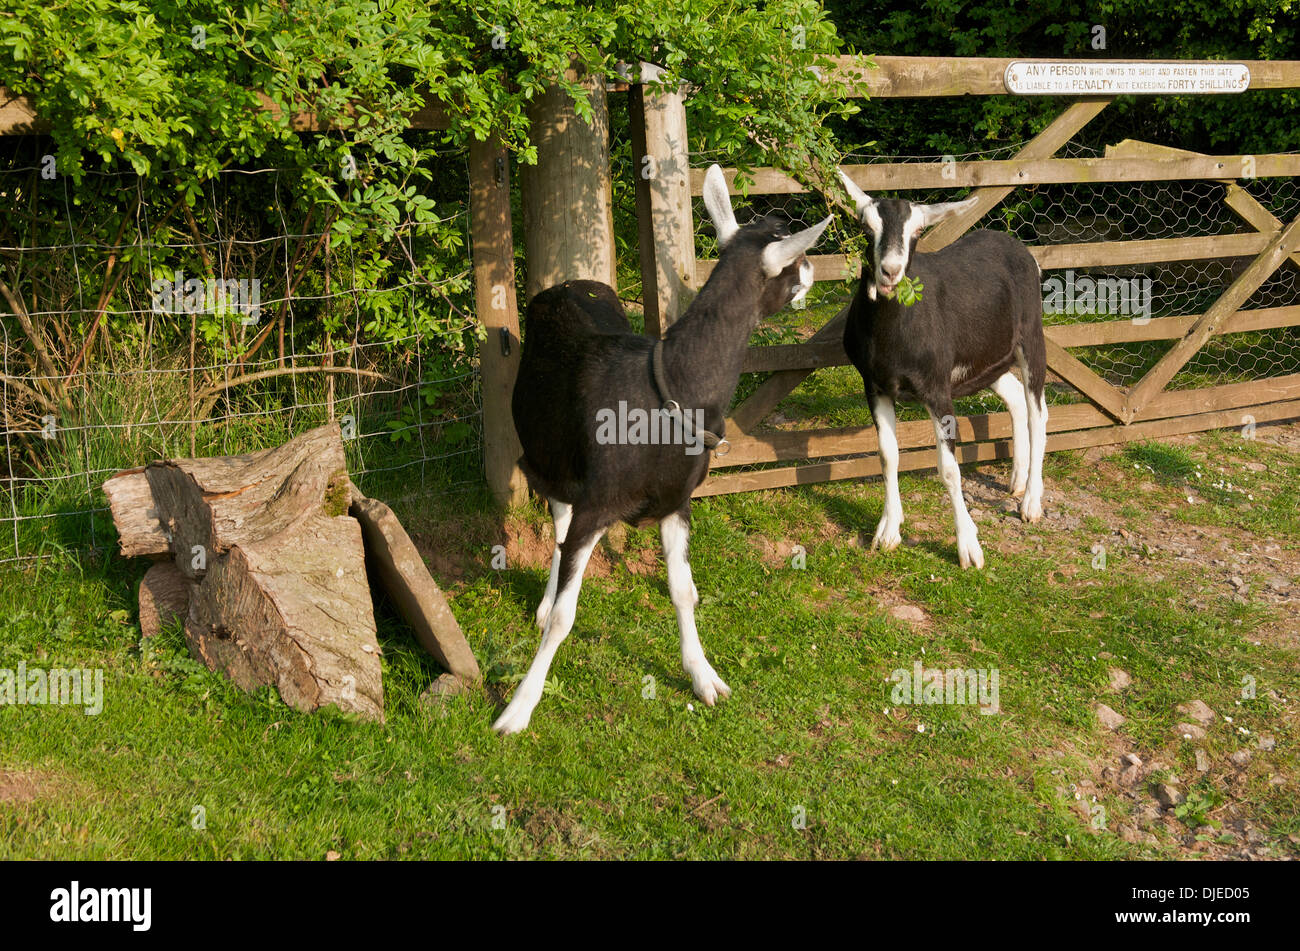 Goats eating hedgerow, UK Stock Photo